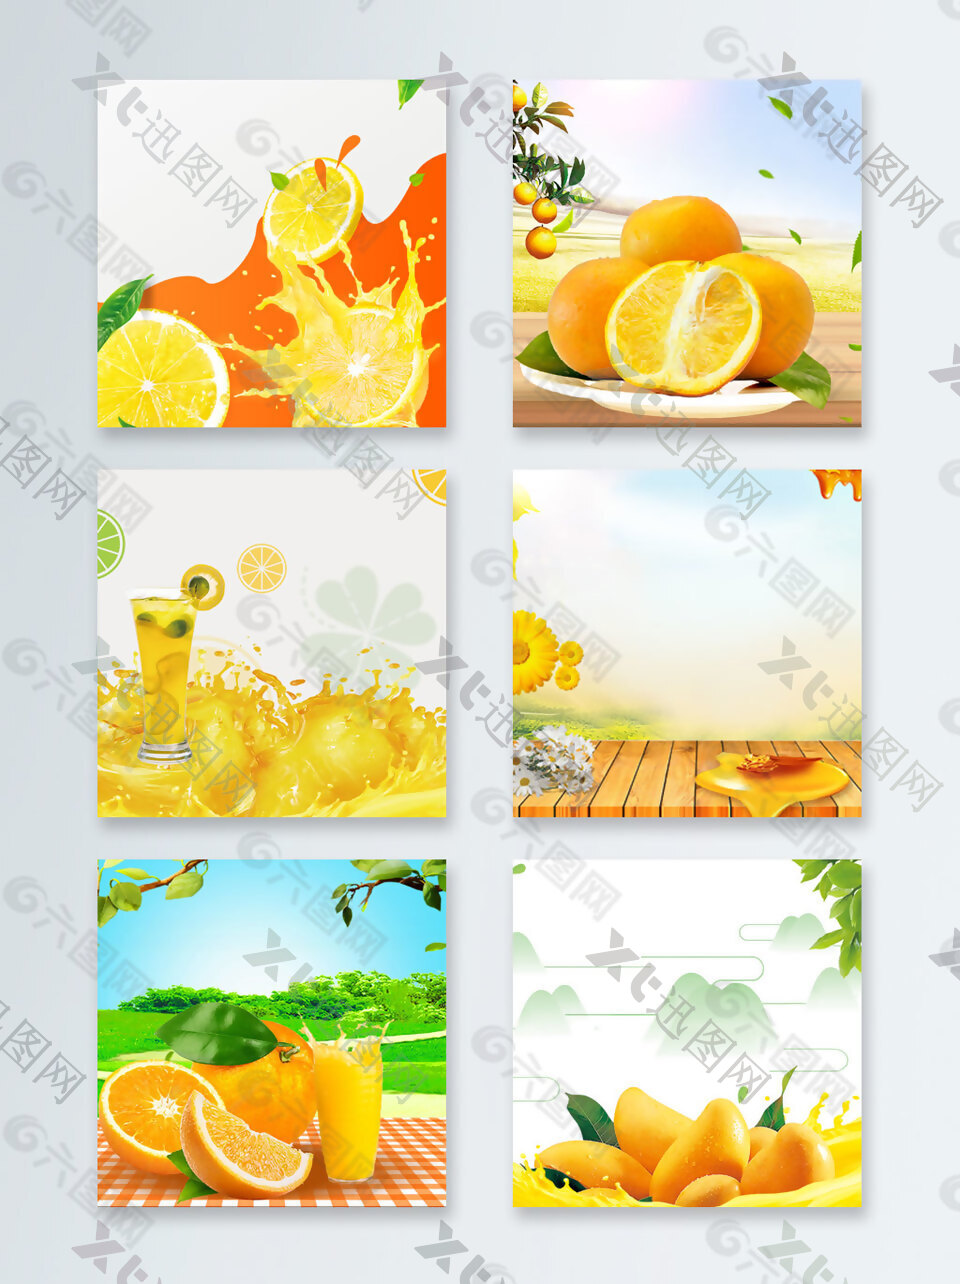 橙子橙汁夏末促销直通车主图背景